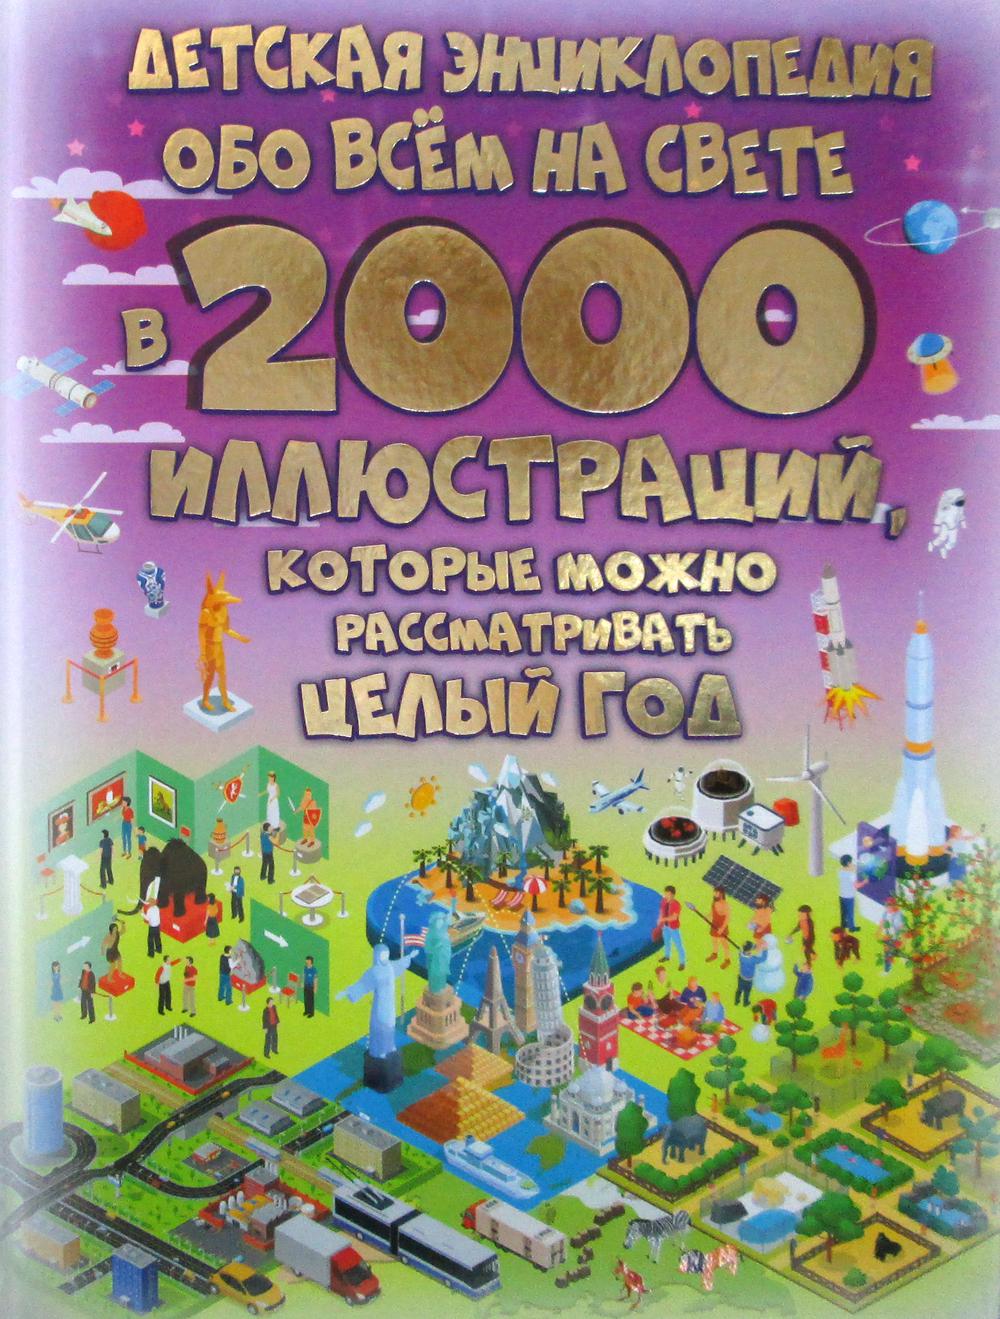        2000 ,     